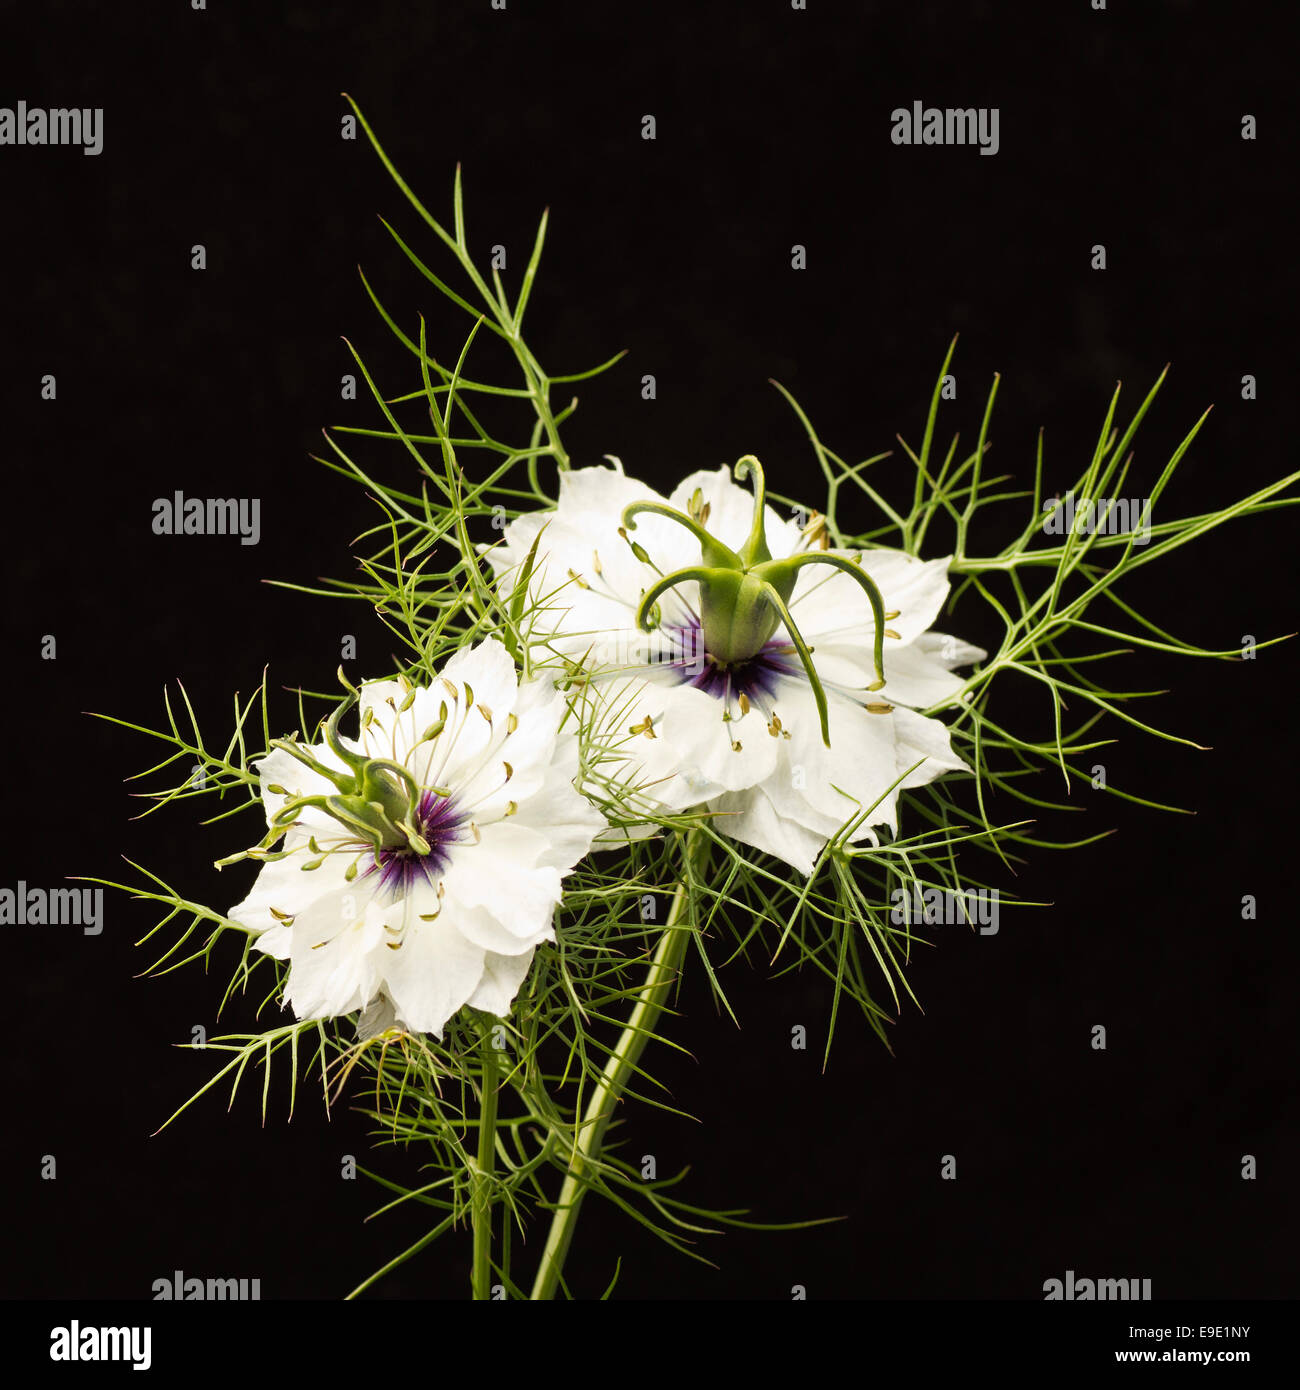 Zwei schöne Blumen von Nigella Damascena - auch bekannt als ' Love-in-a-mist' - set vor einem schwarzen Hintergrund. Stockfoto